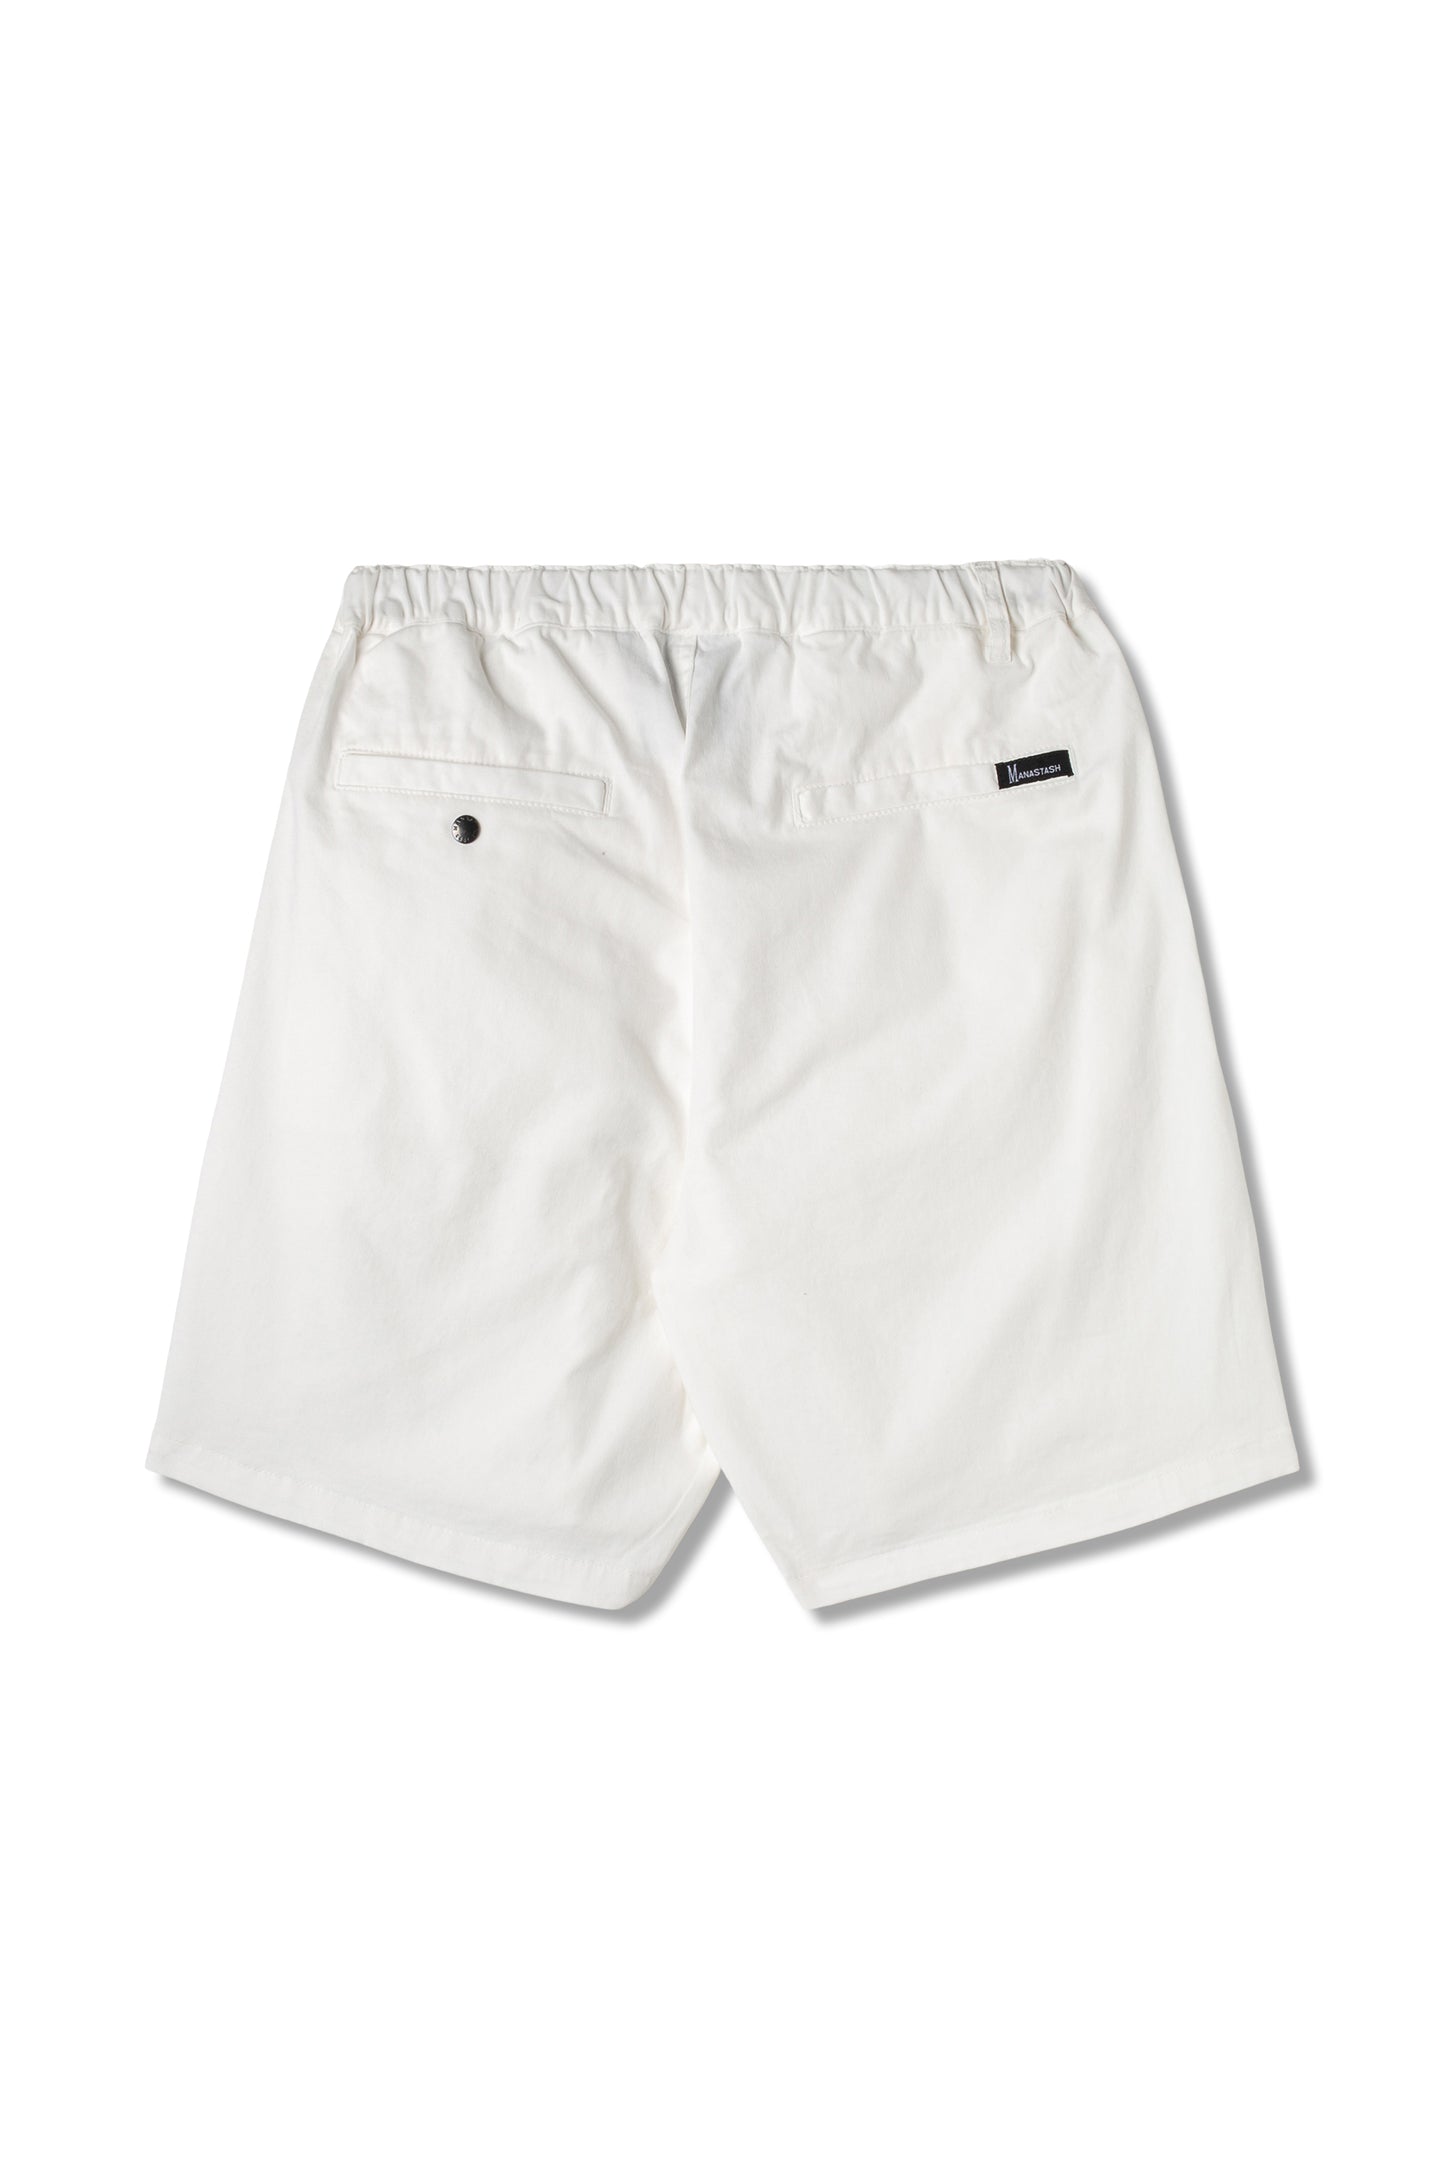 Flex Climber Wide Shorts (Off White) – Manastash Europe